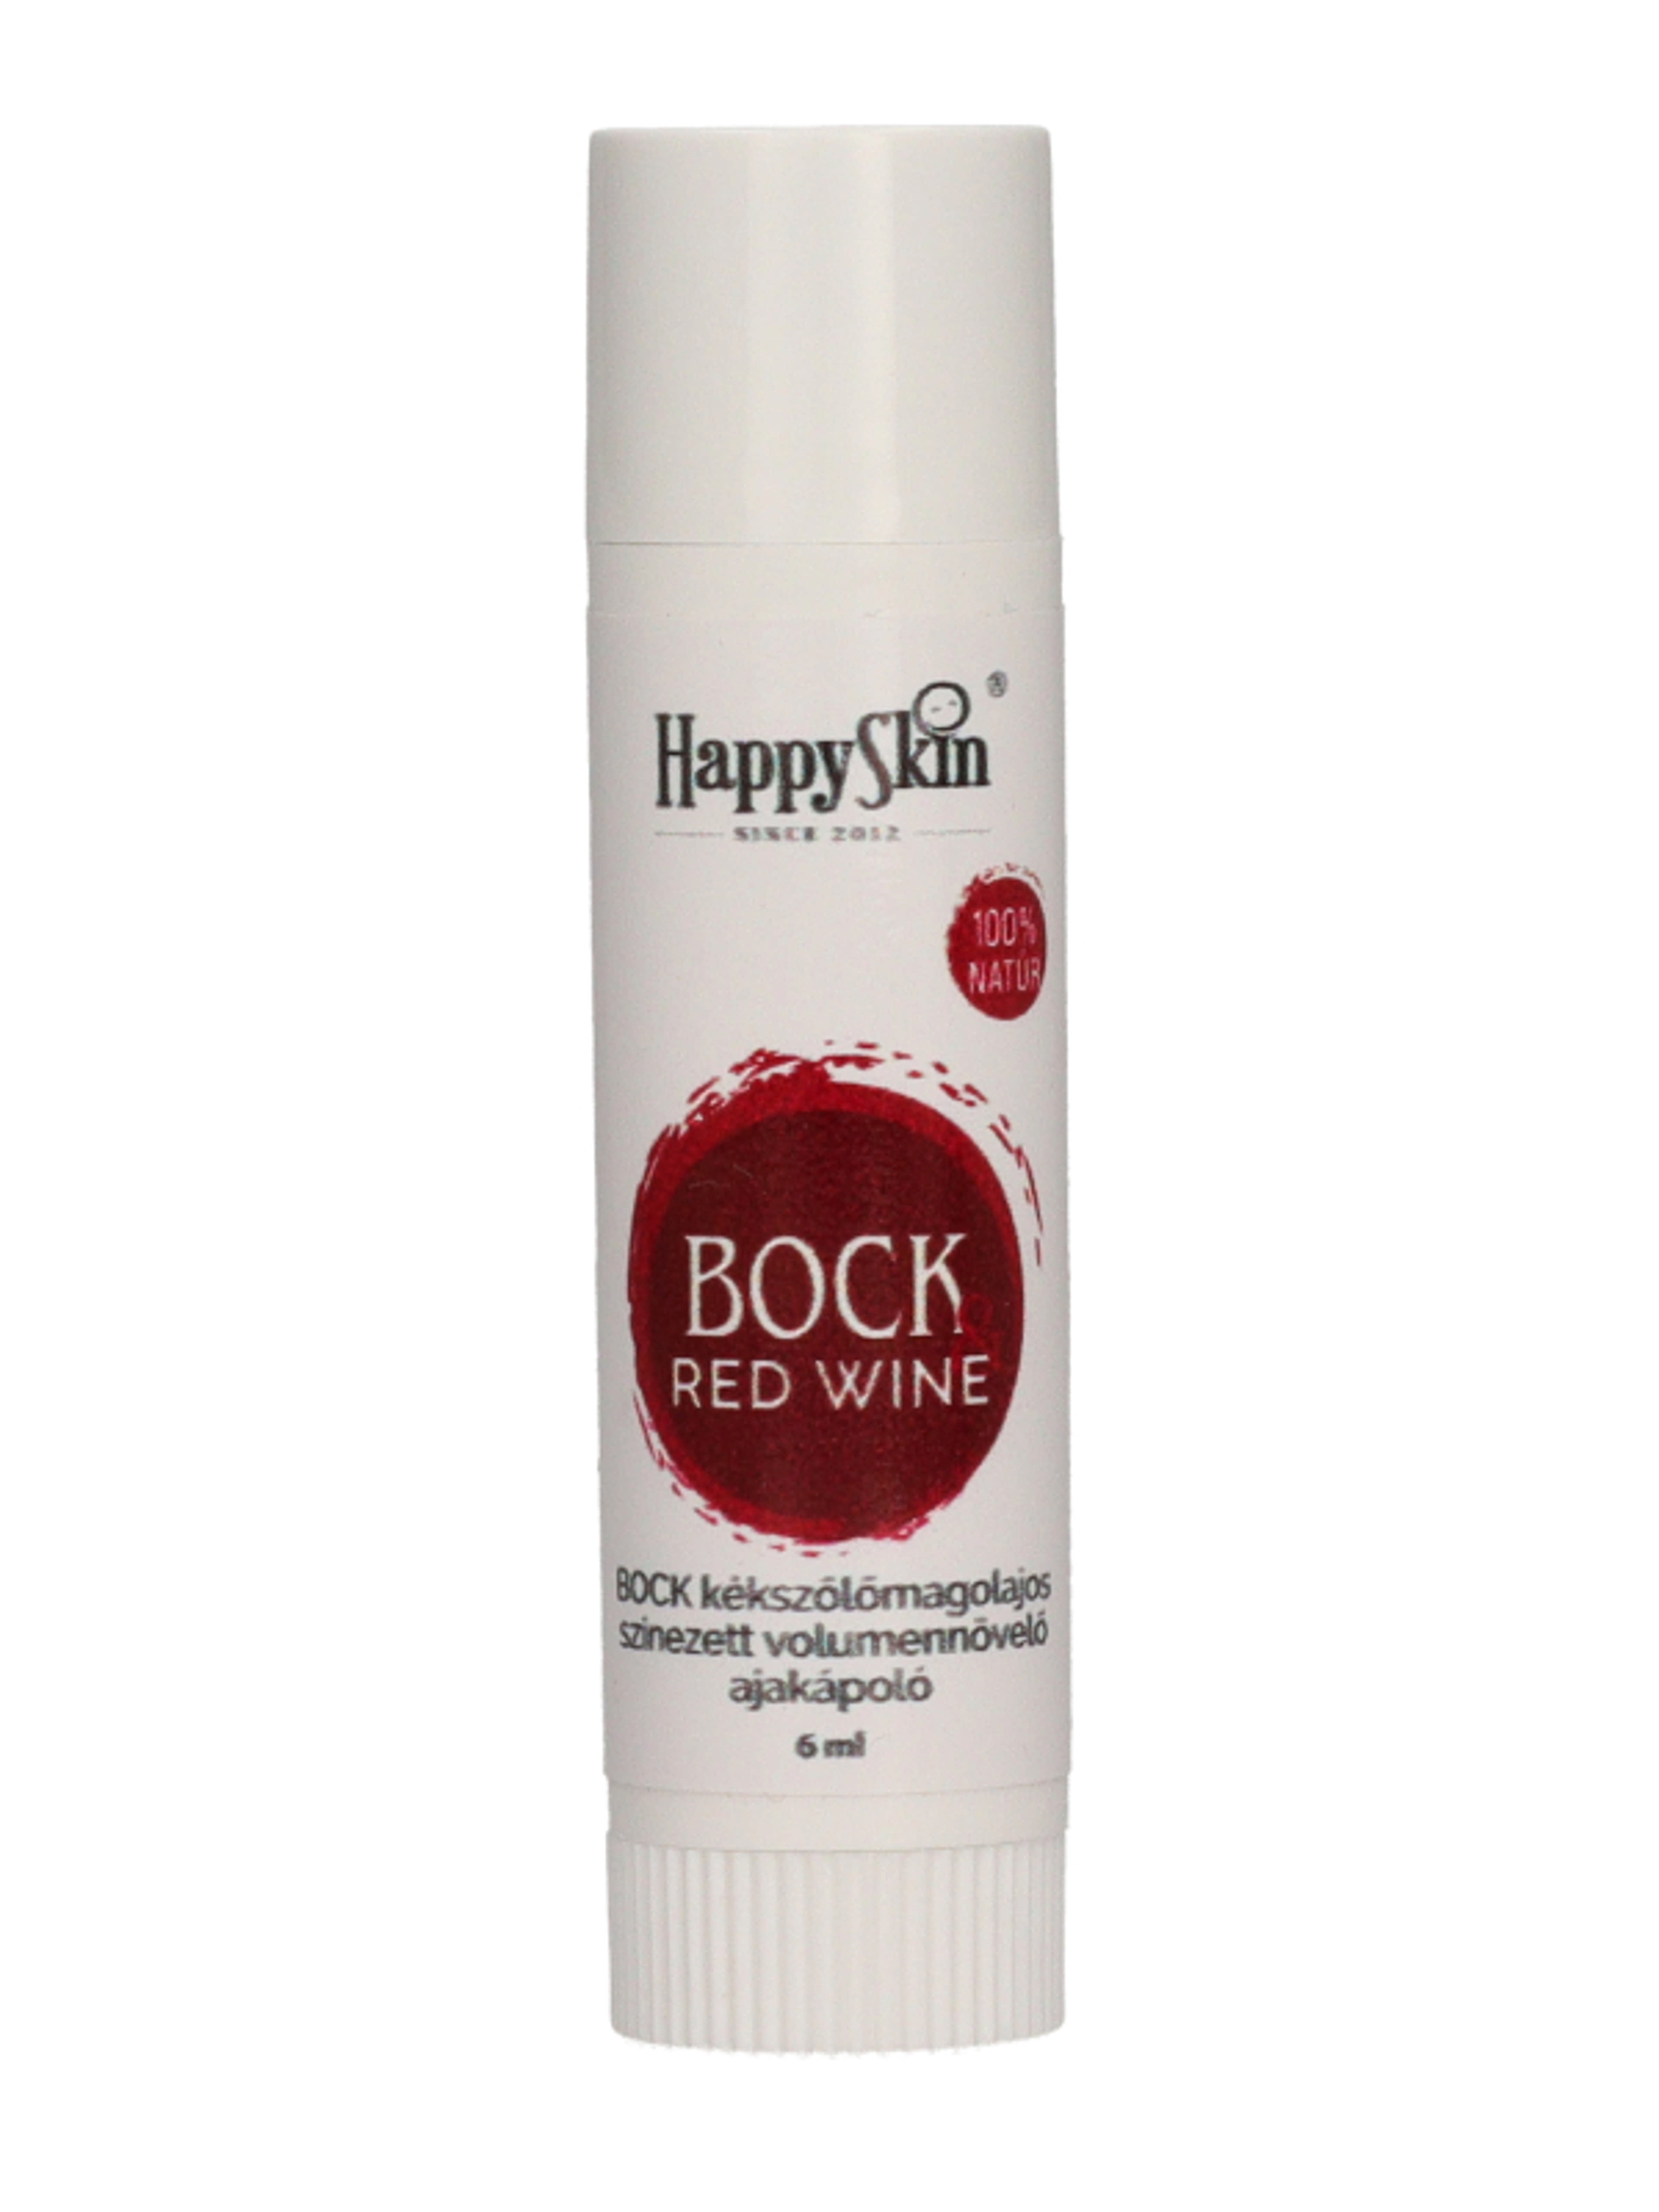 HappySkin Bock akajápoló vörös bor - 6 ml-1